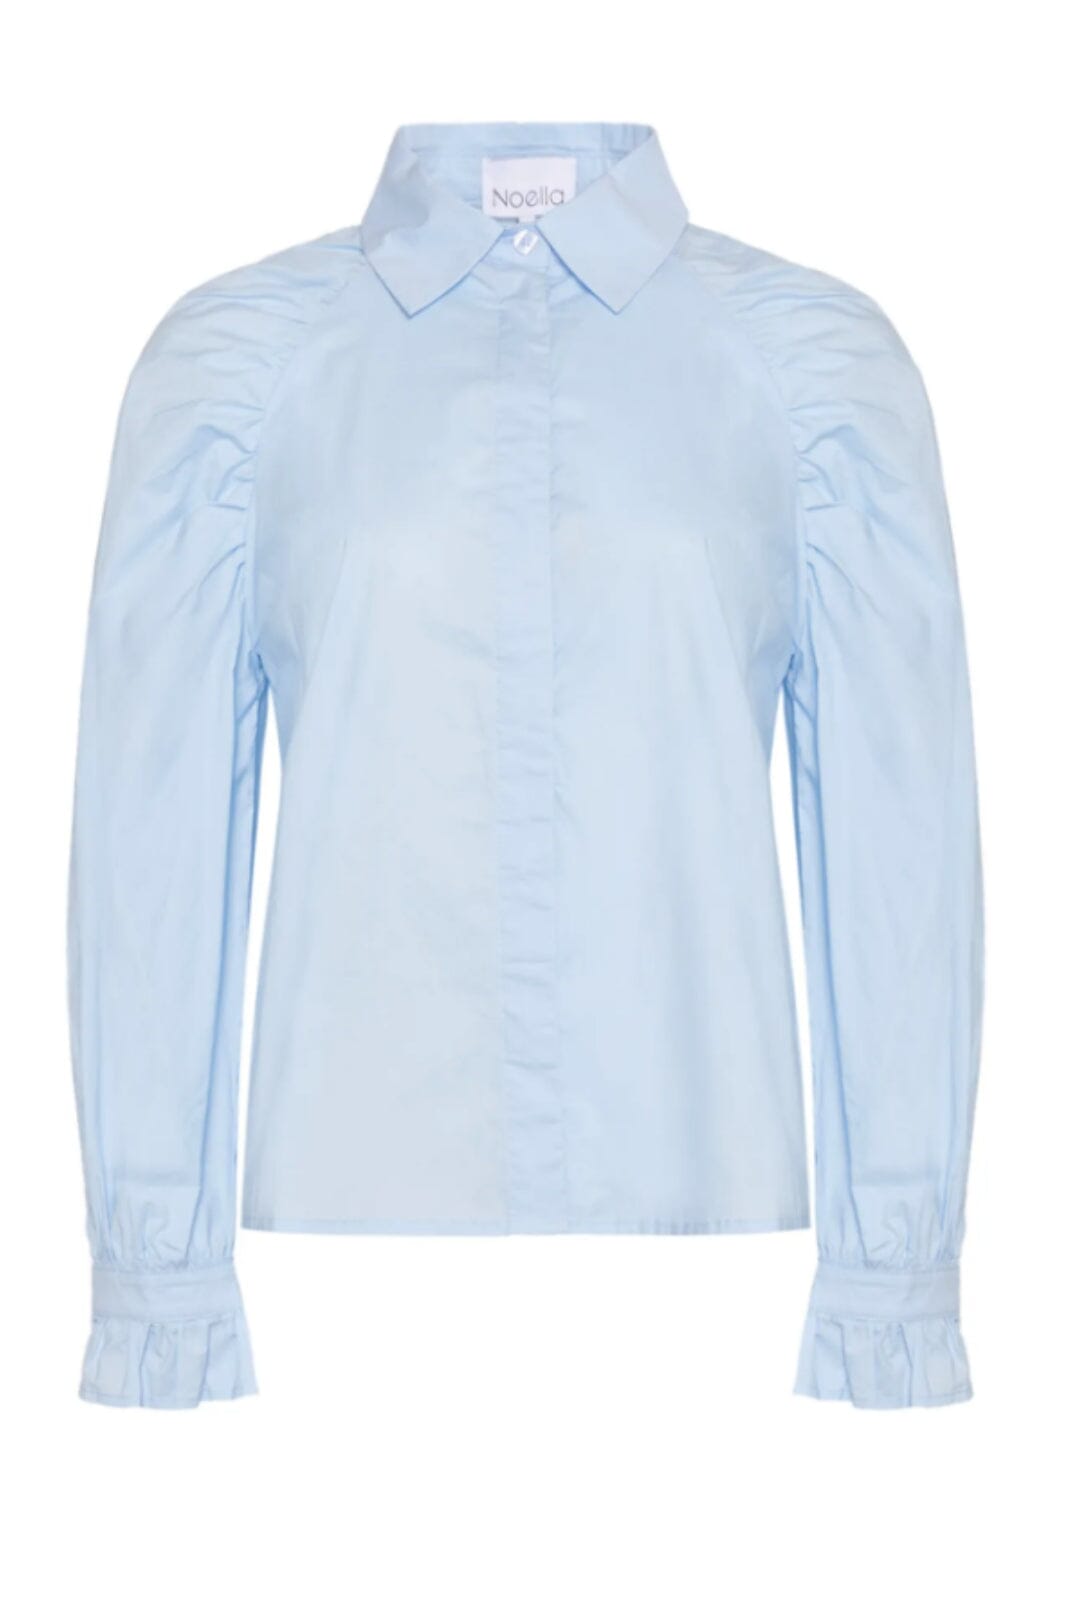 Noella - Rynn Shirt - 016 Light Blue Skjorter 